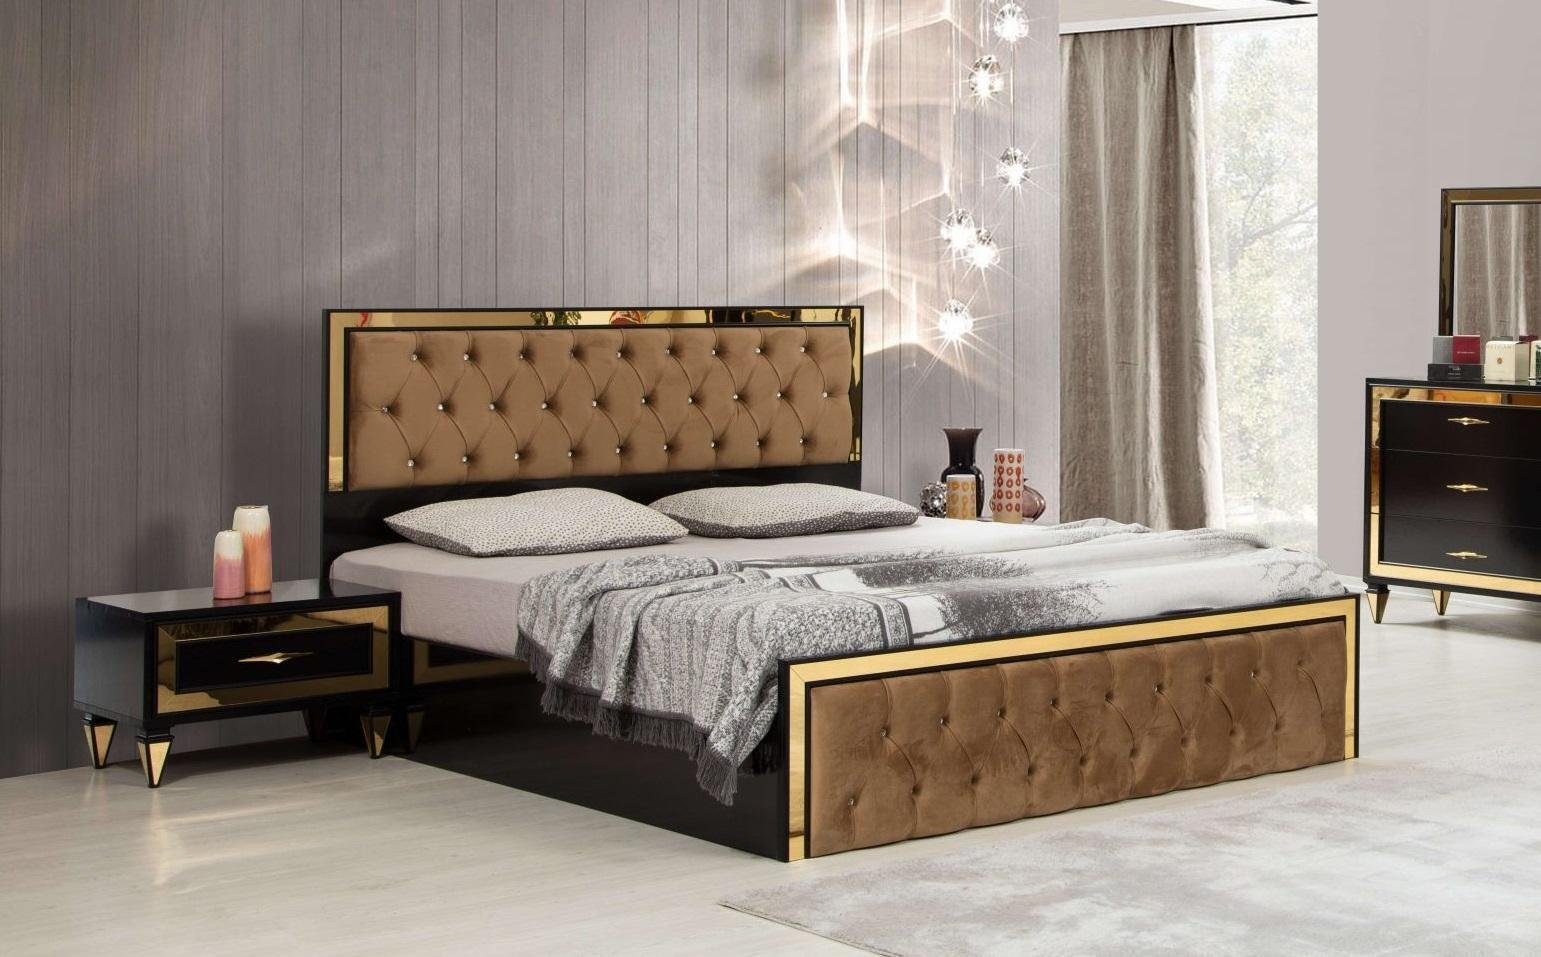 JVmoebel Doppelbett mit Europe Edelstahl, Chesterfield Schlafzimmer-Set In Luxus Made Schwarz-Beiges